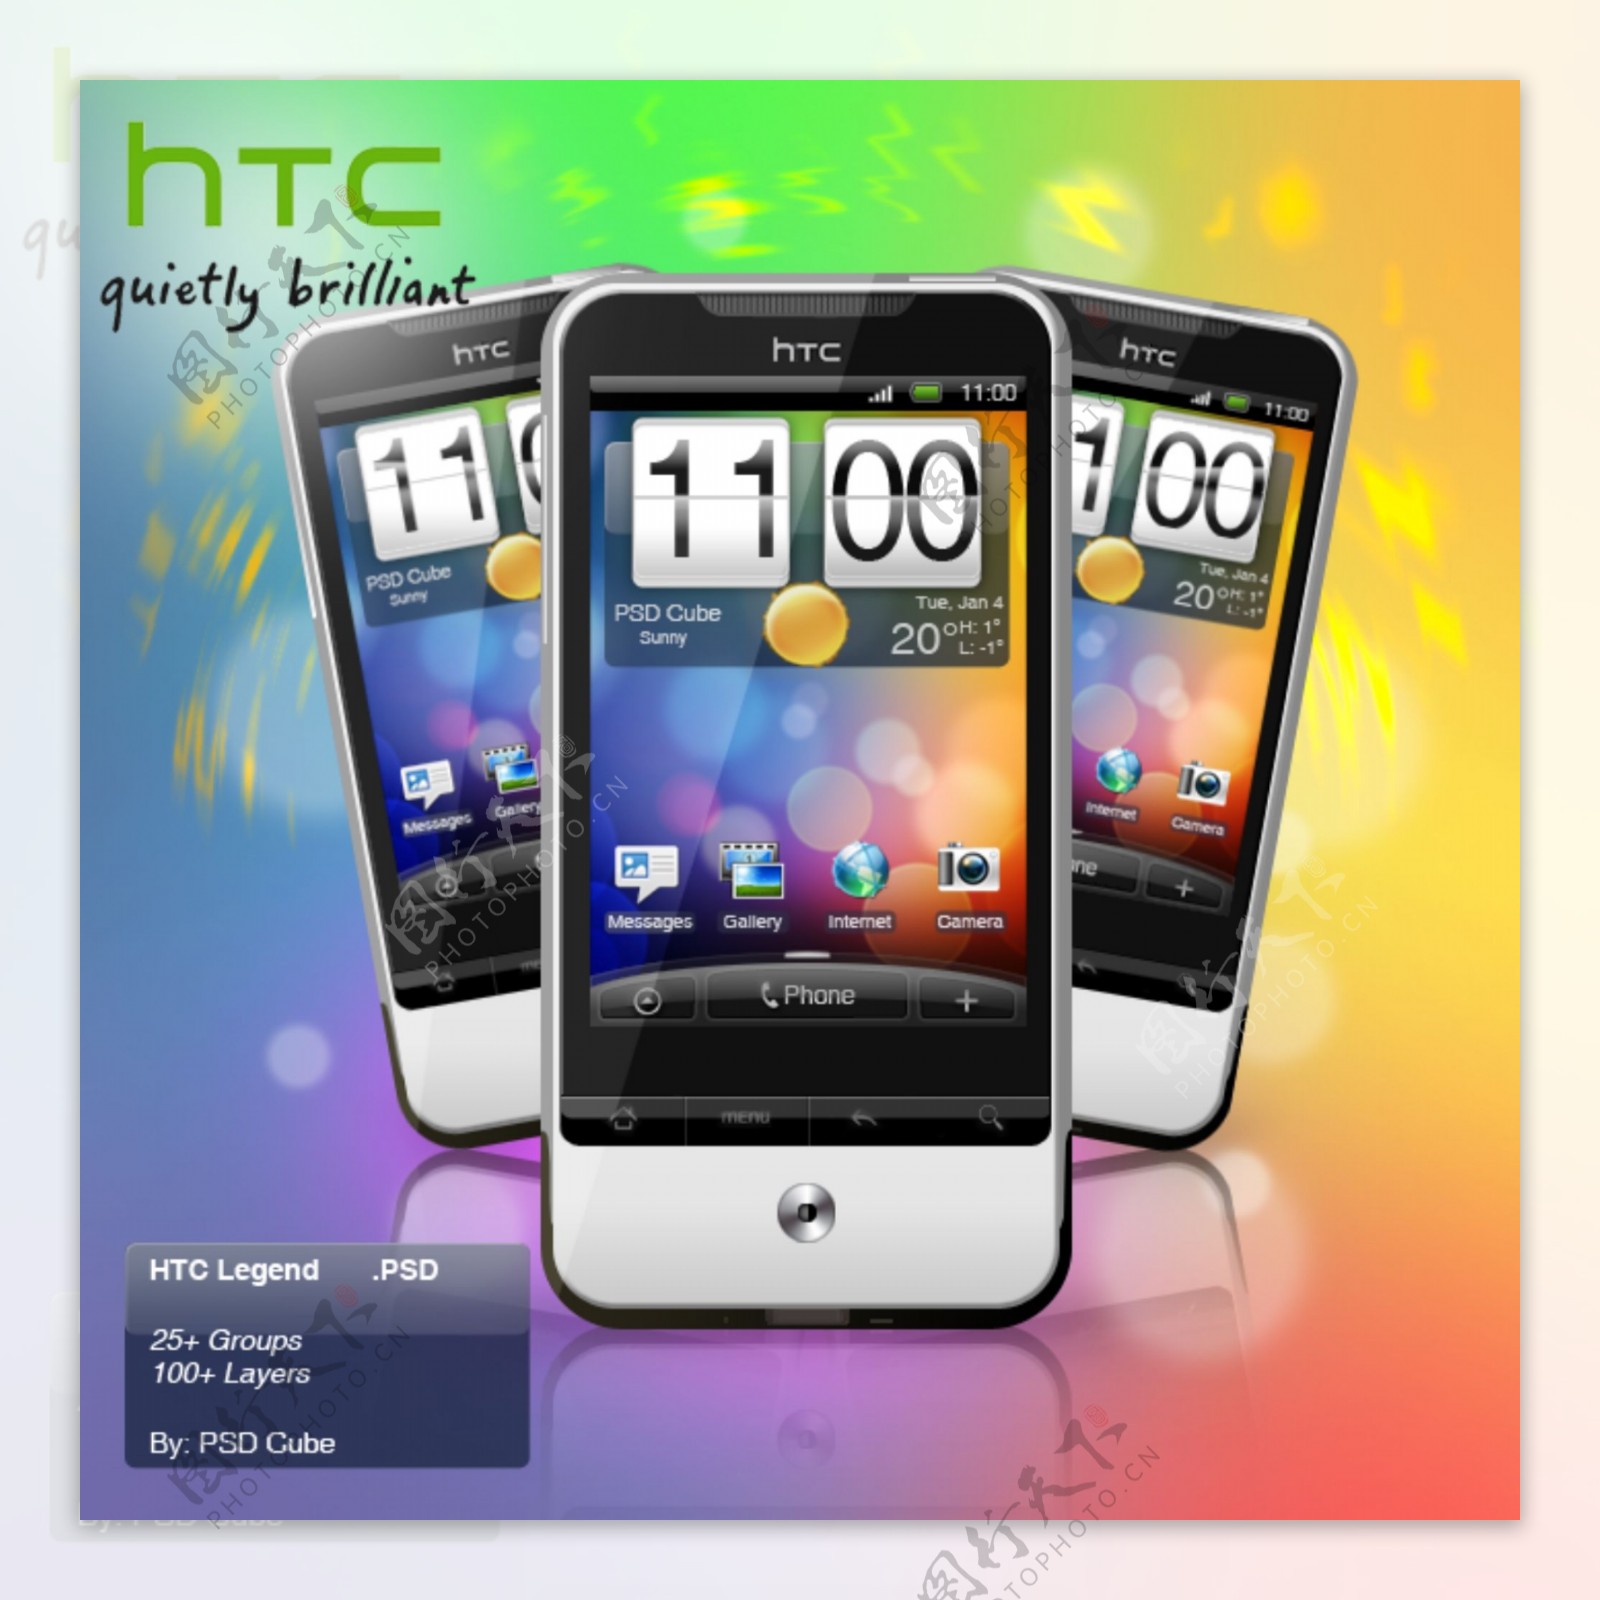 htc手机网页界面图片